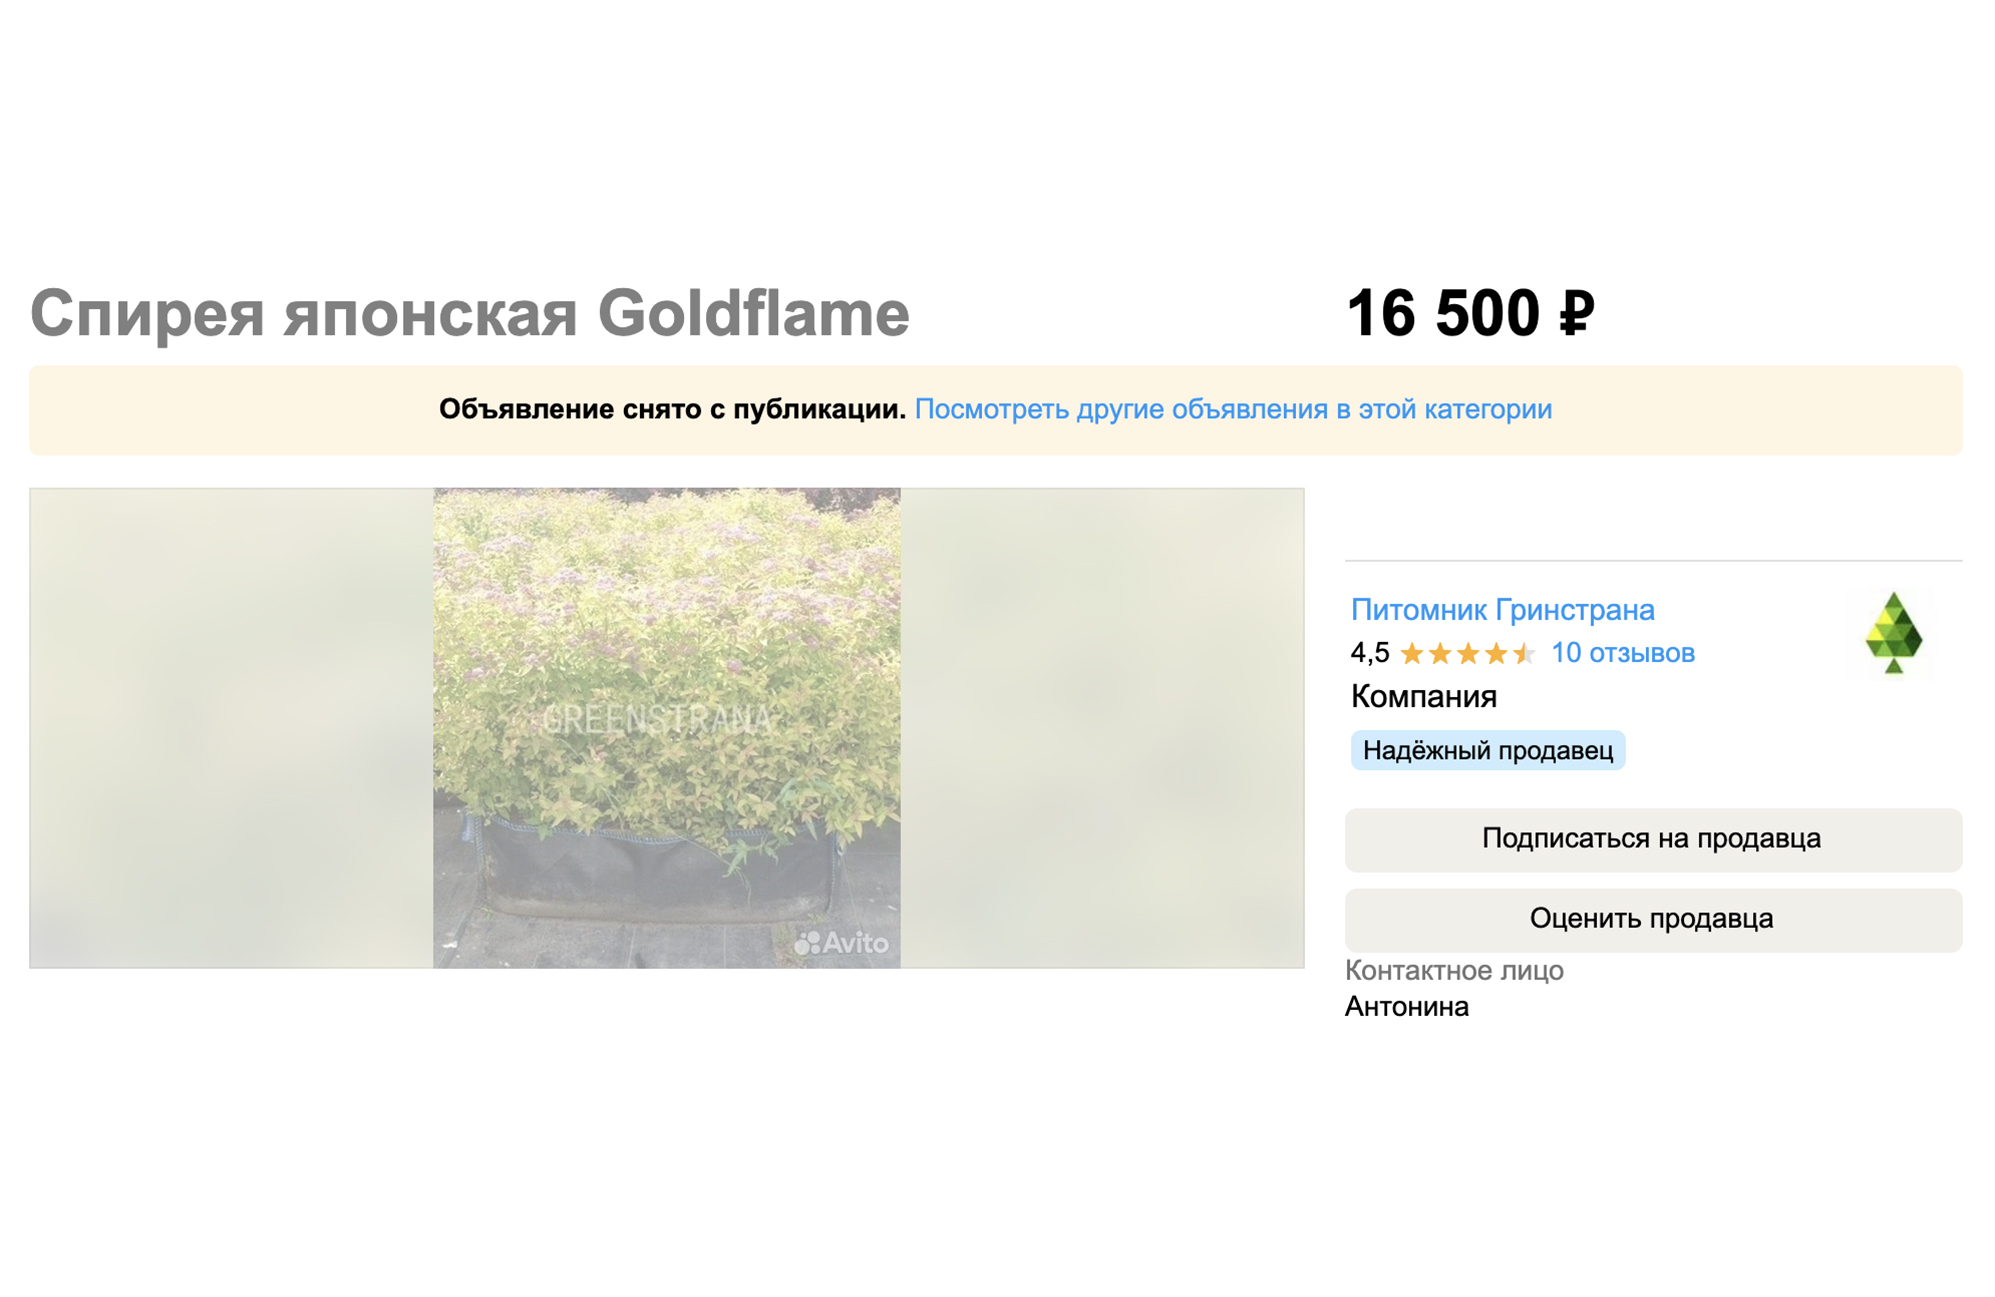 Сортовая взрослая спирея из известного питомника стоит уже 16 500 ₽. Источник: avito.ru